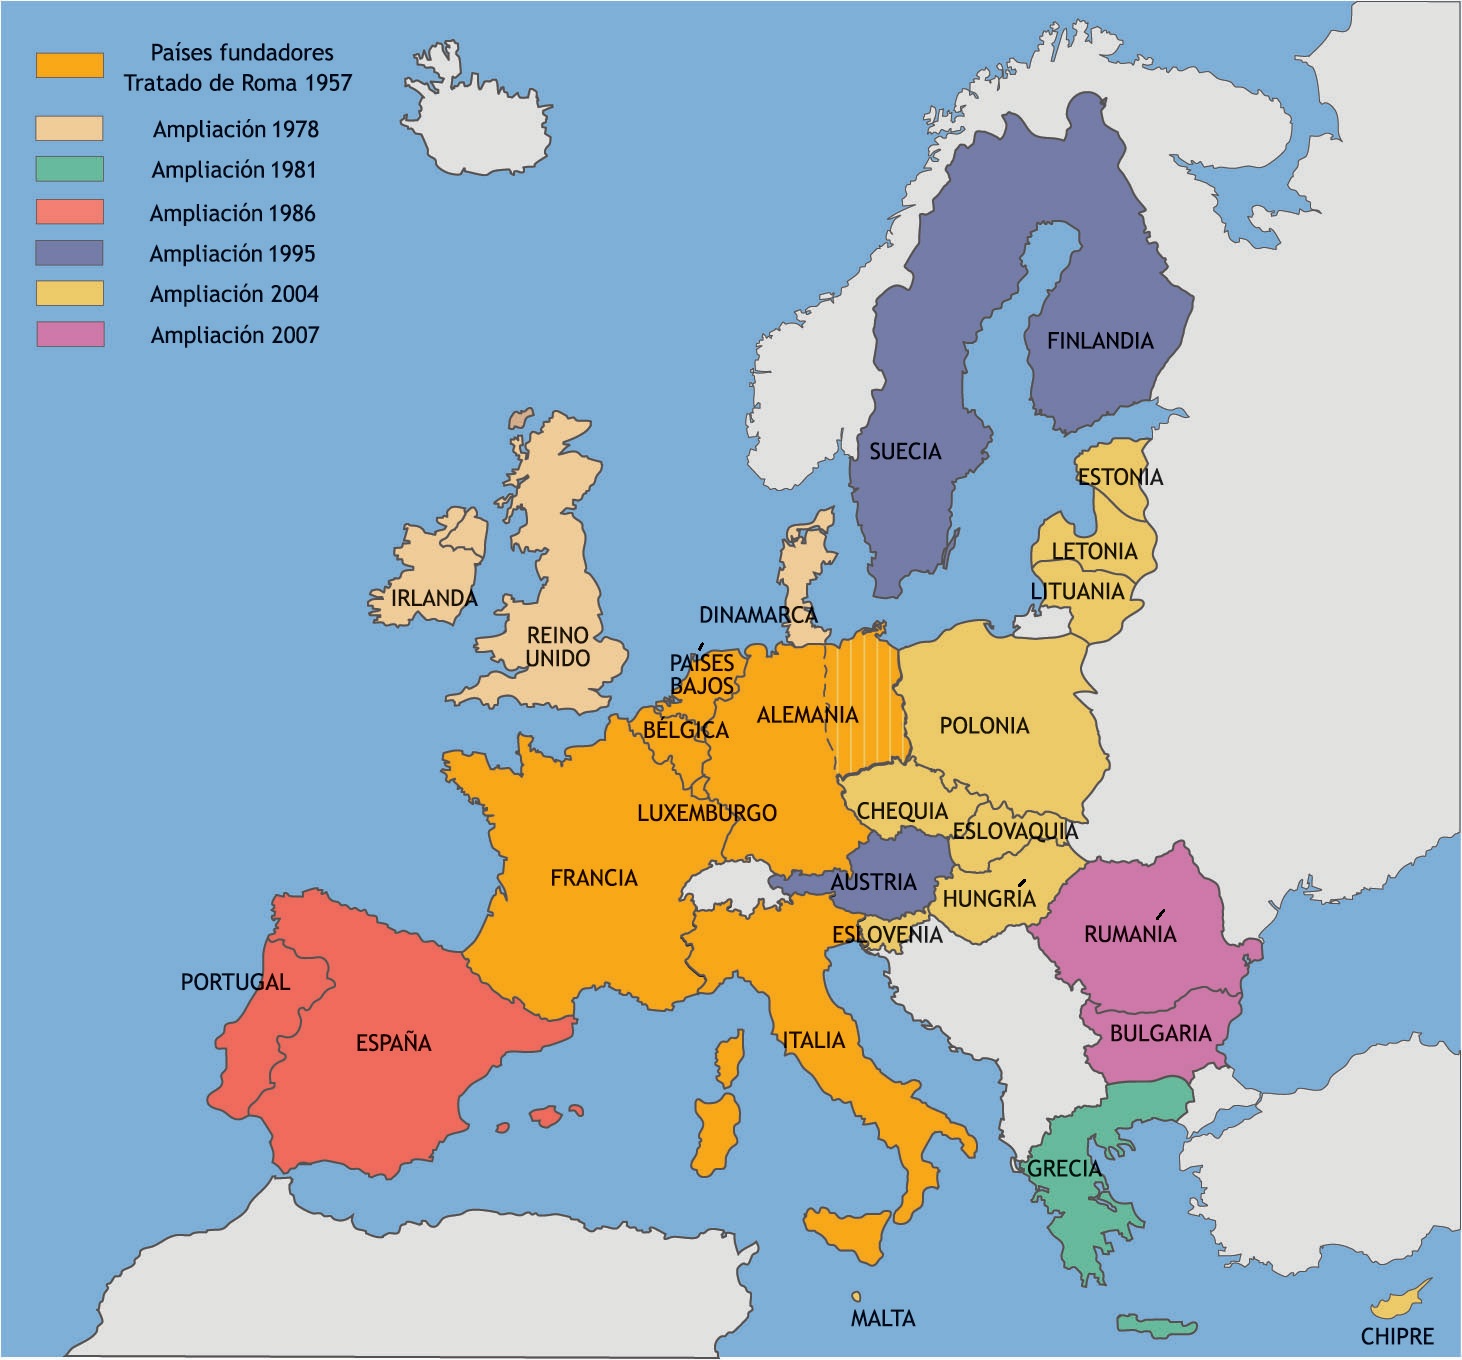 MI BLOG PARA LA E.S.O.: MAPA INTERACTIVO DE EUROPA